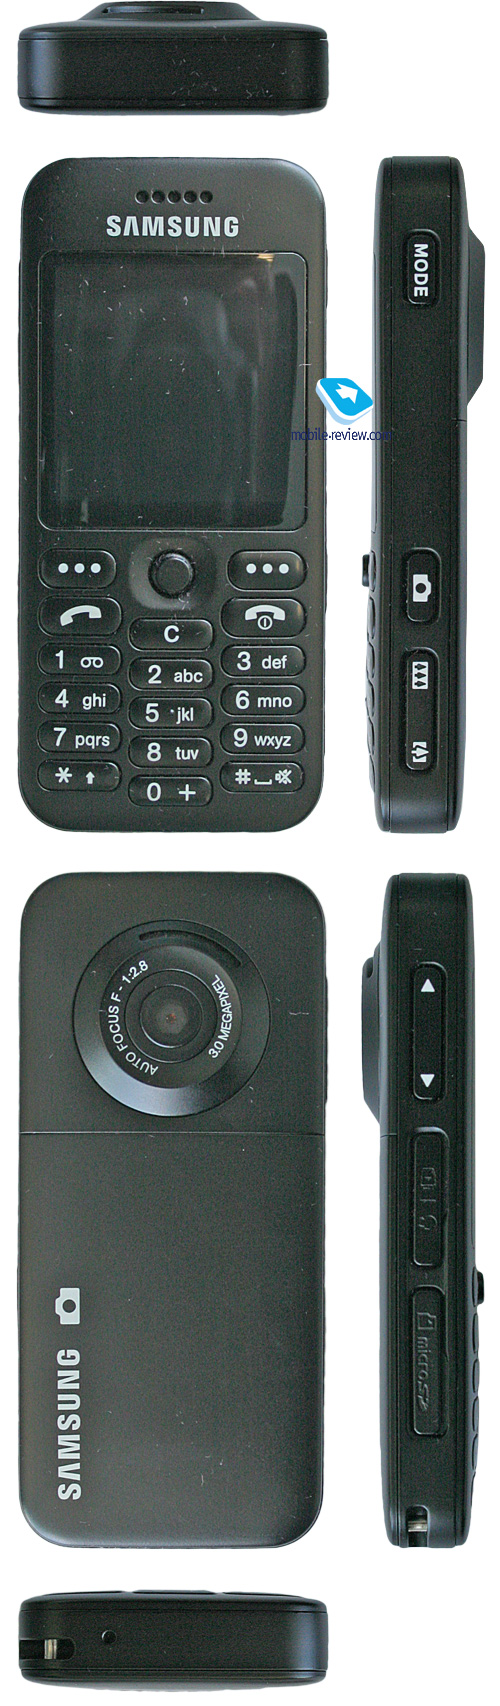 Инструкция как пользоваться камерой телефона samsung d900i